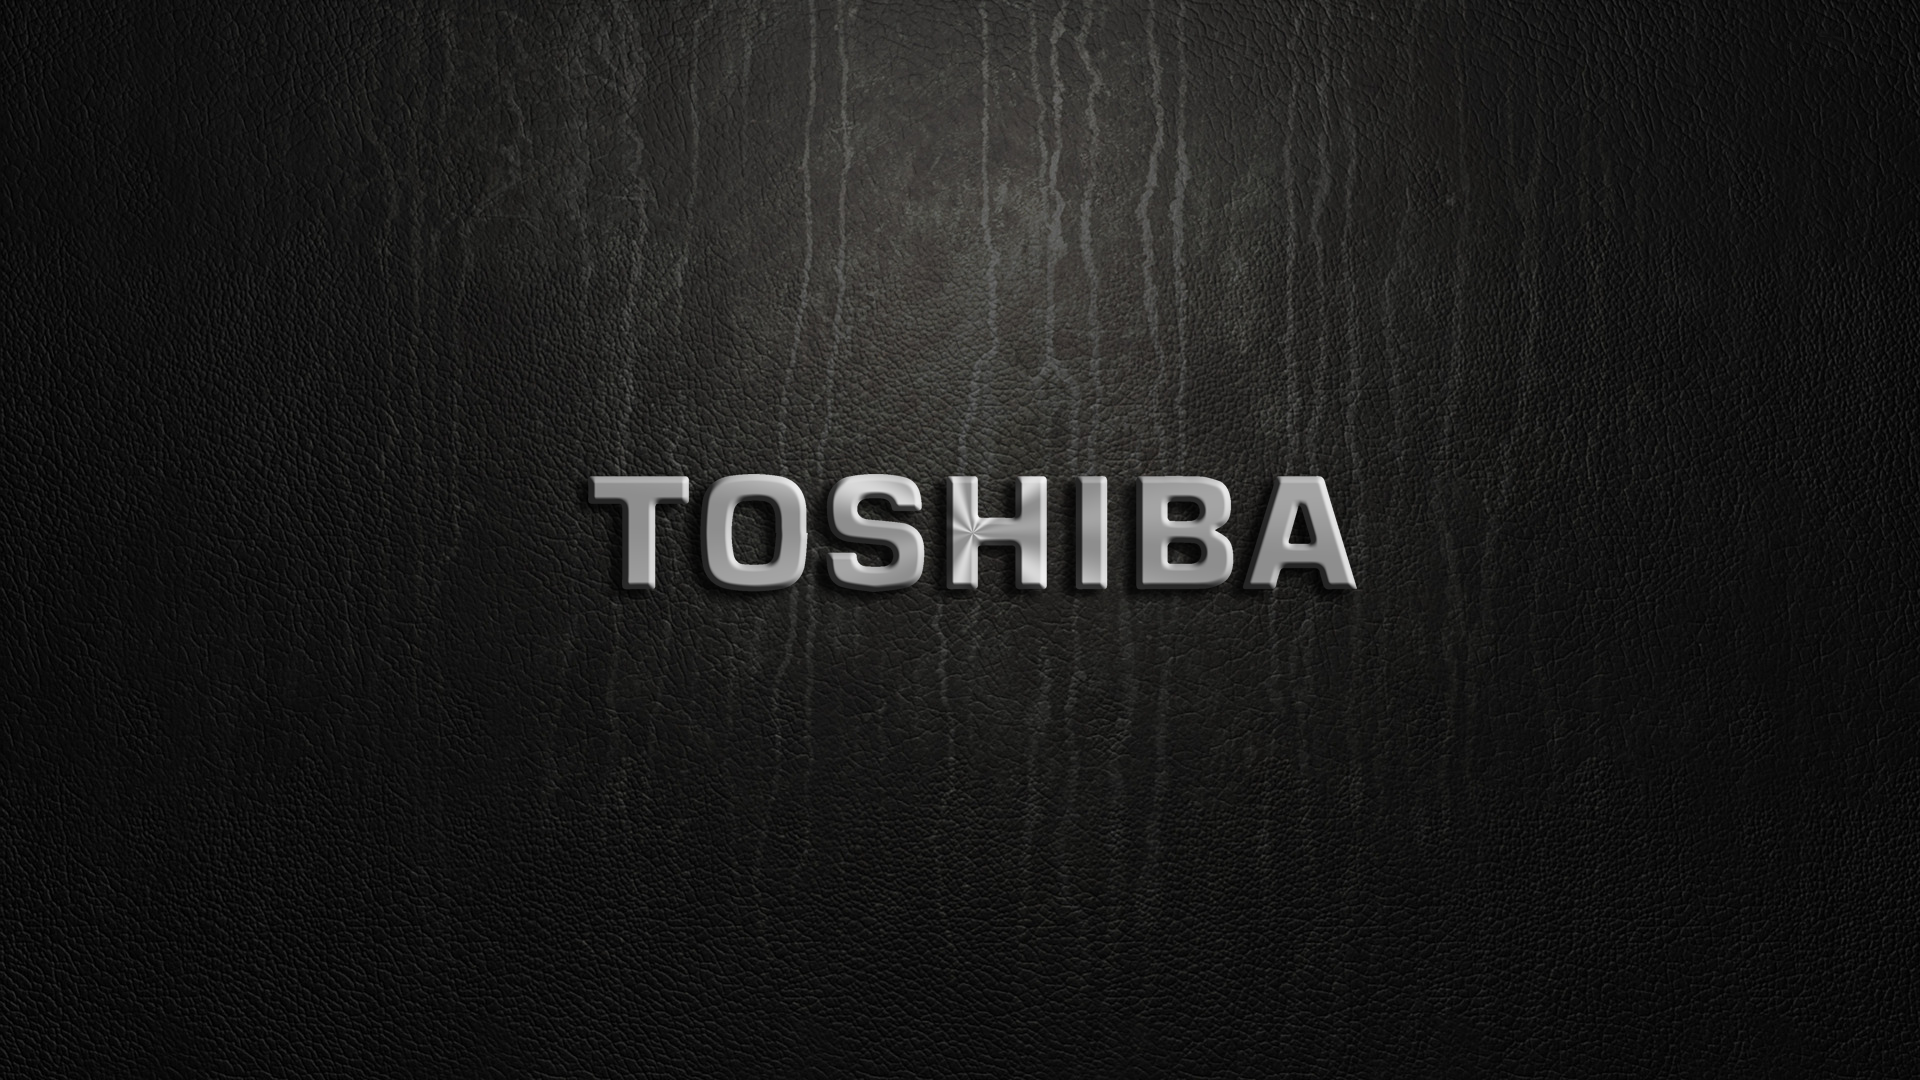 Toshiba Bilgisayar Departmanı İçin Kritik Karar